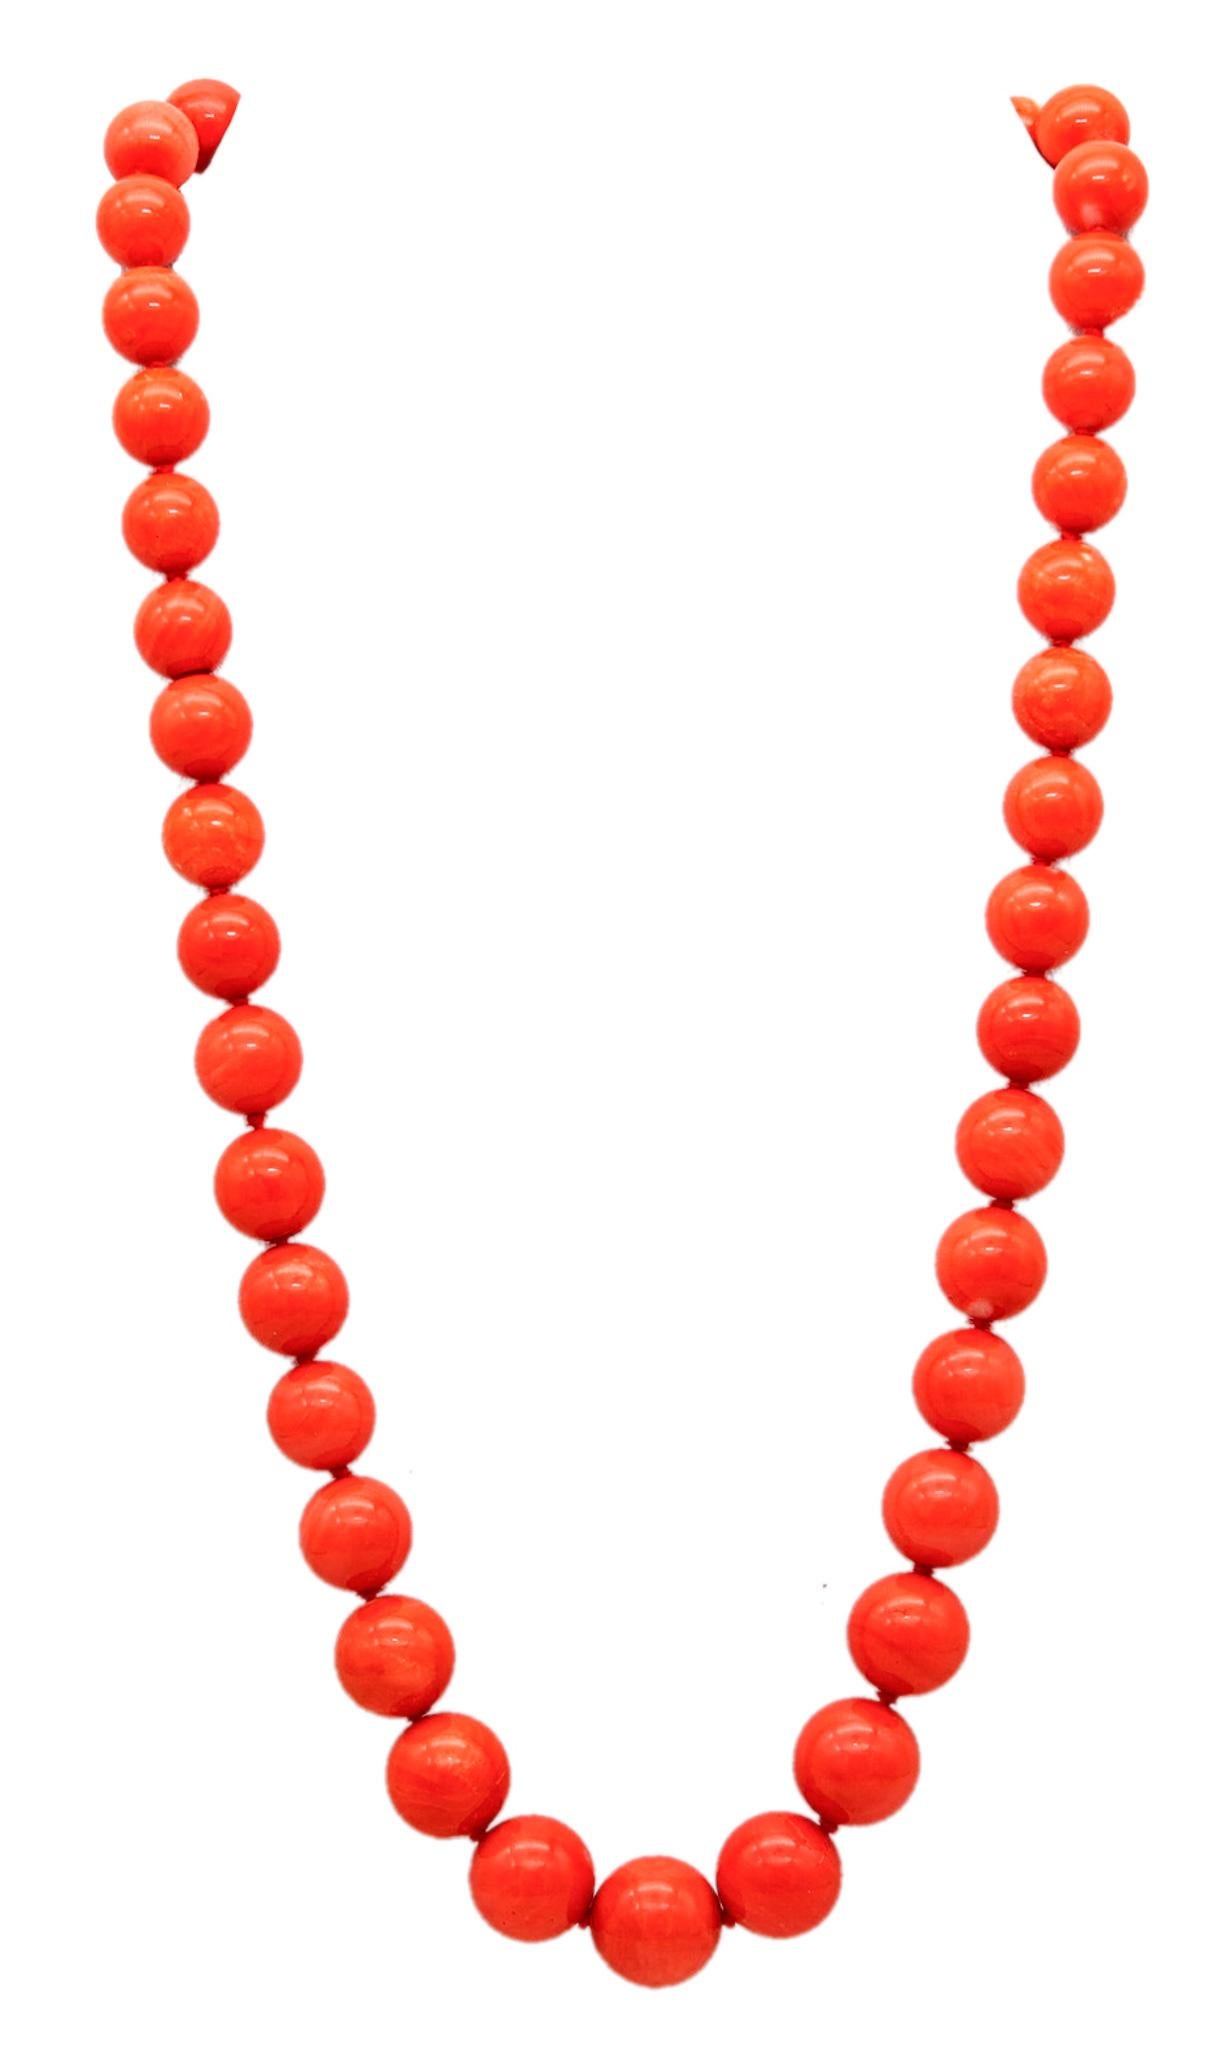 Halskette aus abgestuften Korallen, entworfen von Bertoro.

Eine außergewöhnliche Korallenkette, die in Arezzo, Italien, im Schmuckatelier von Bertoro hergestellt wurde. Diese Halskette besteht aus dreiundvierzig abgestuften Perlen aus natürlichen,